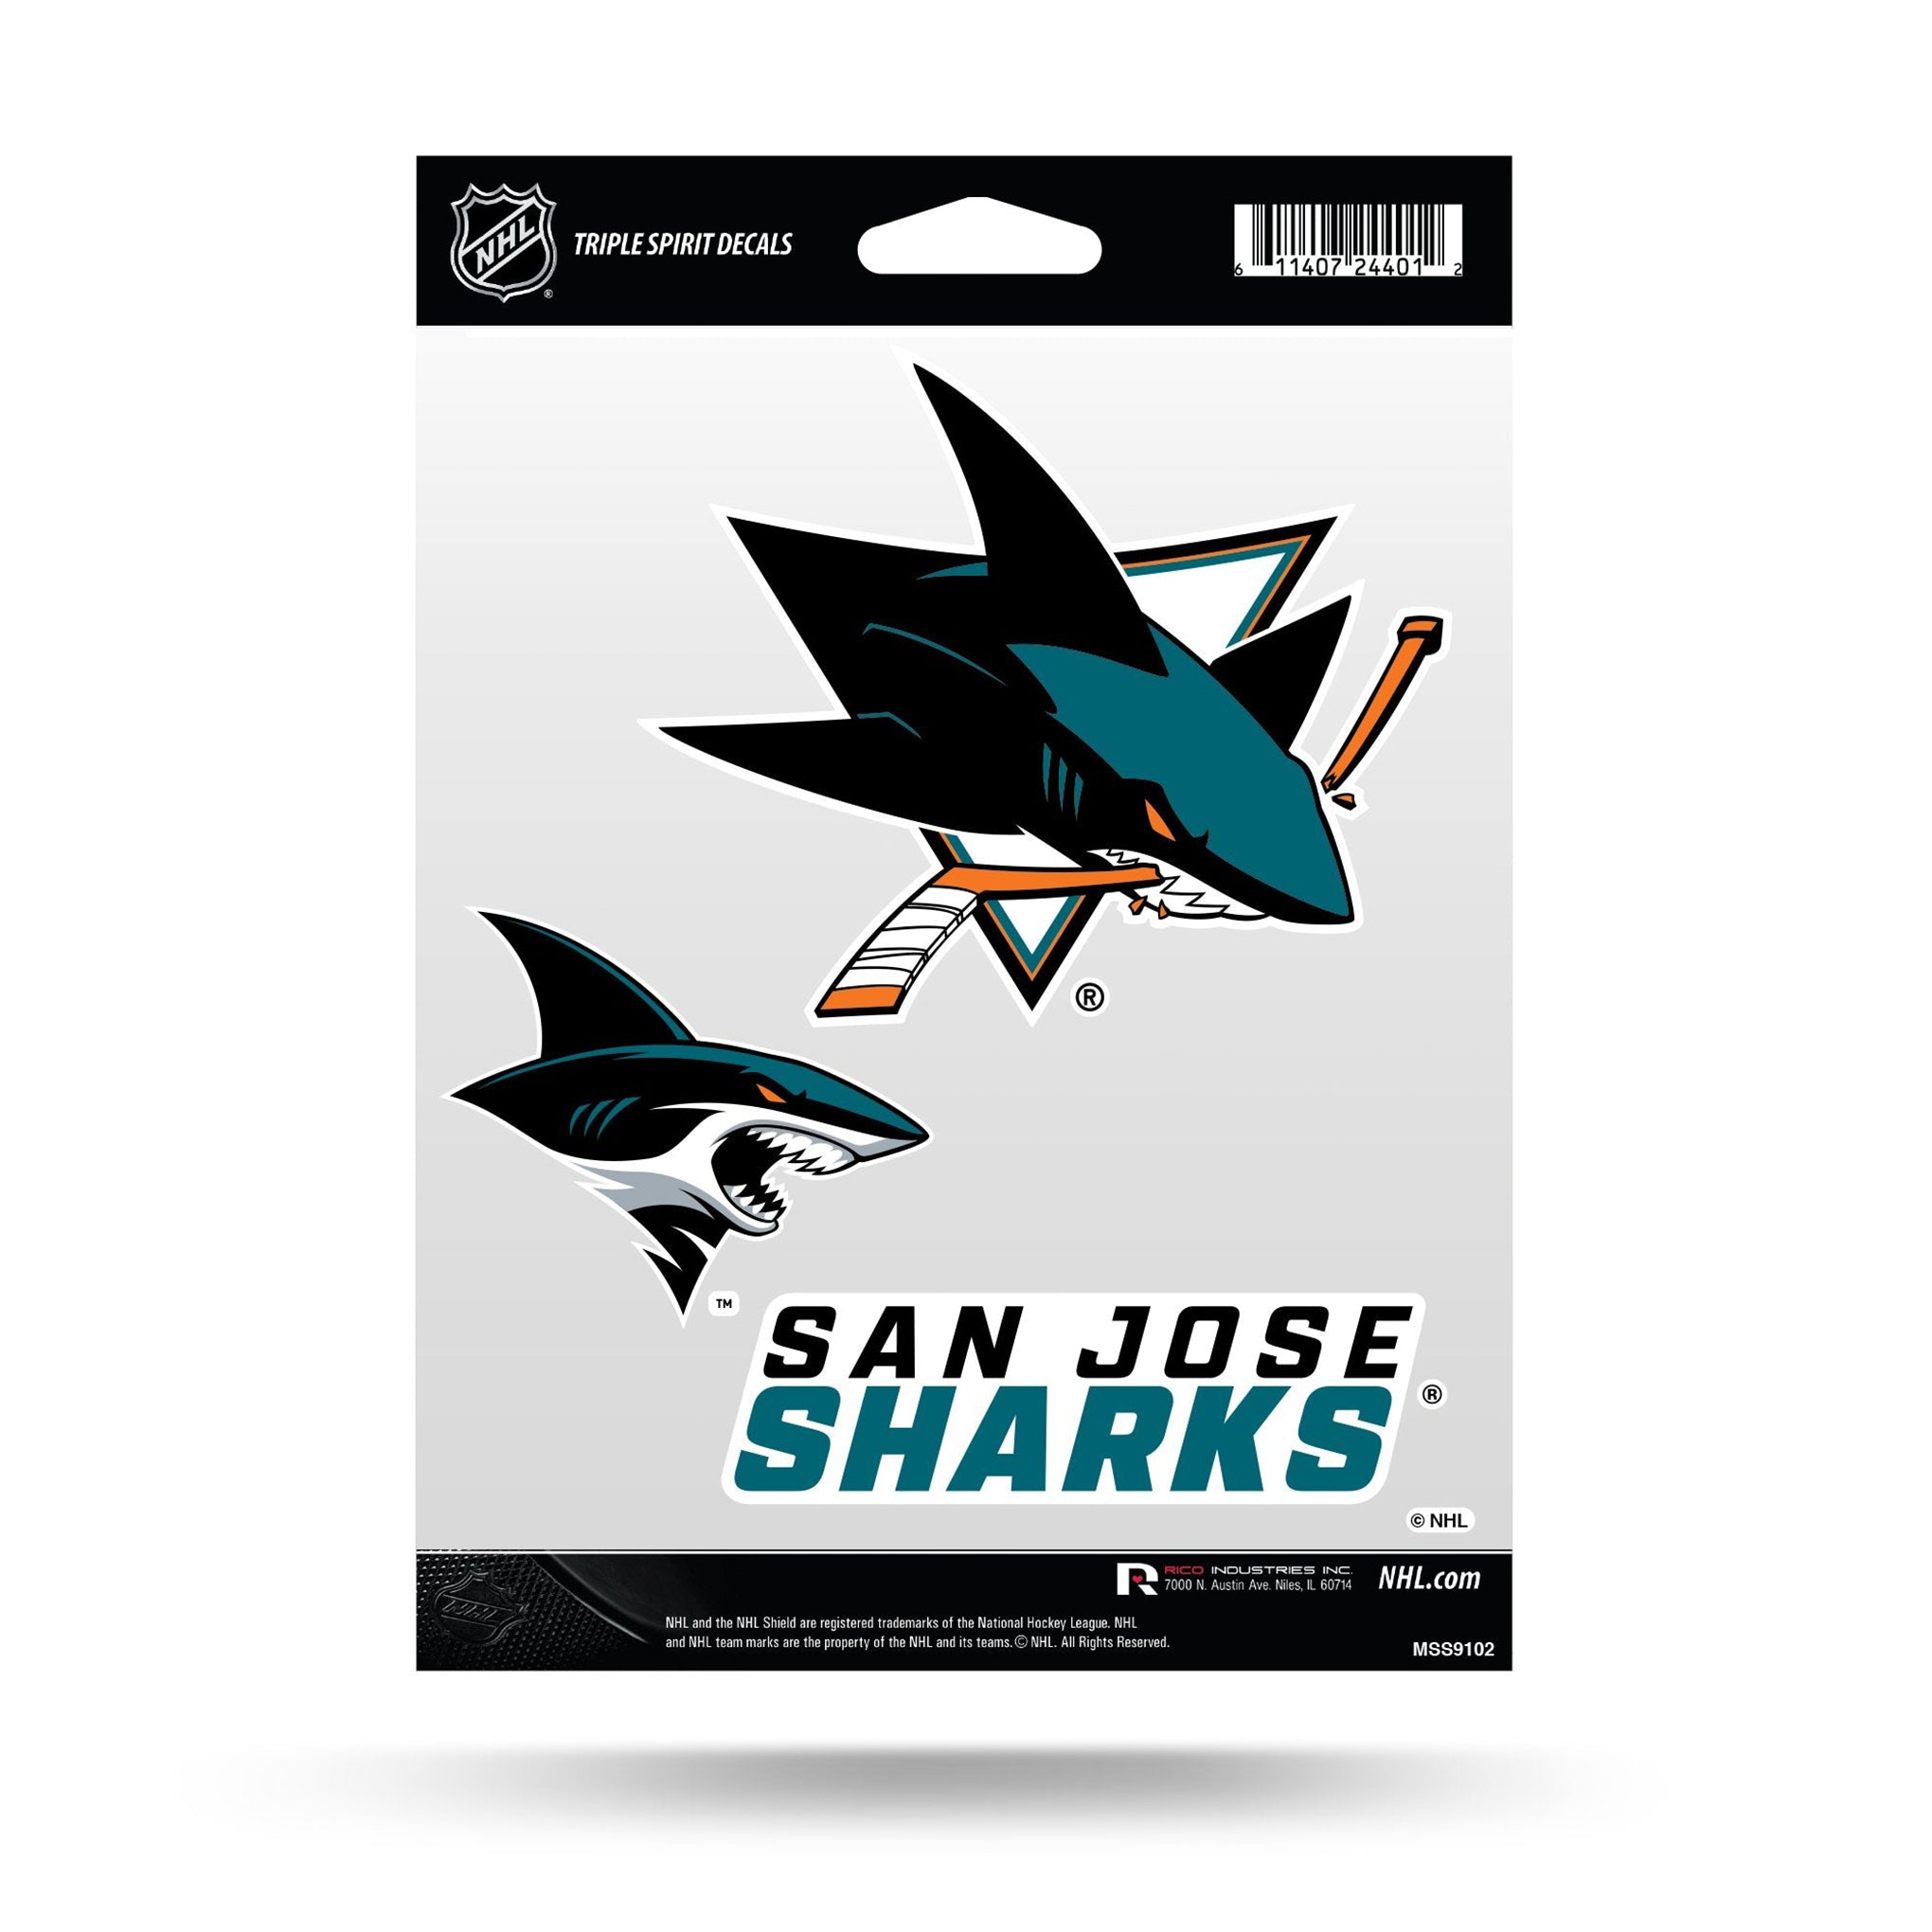 San Jose Sharks in San Jose Sharks Team Shop